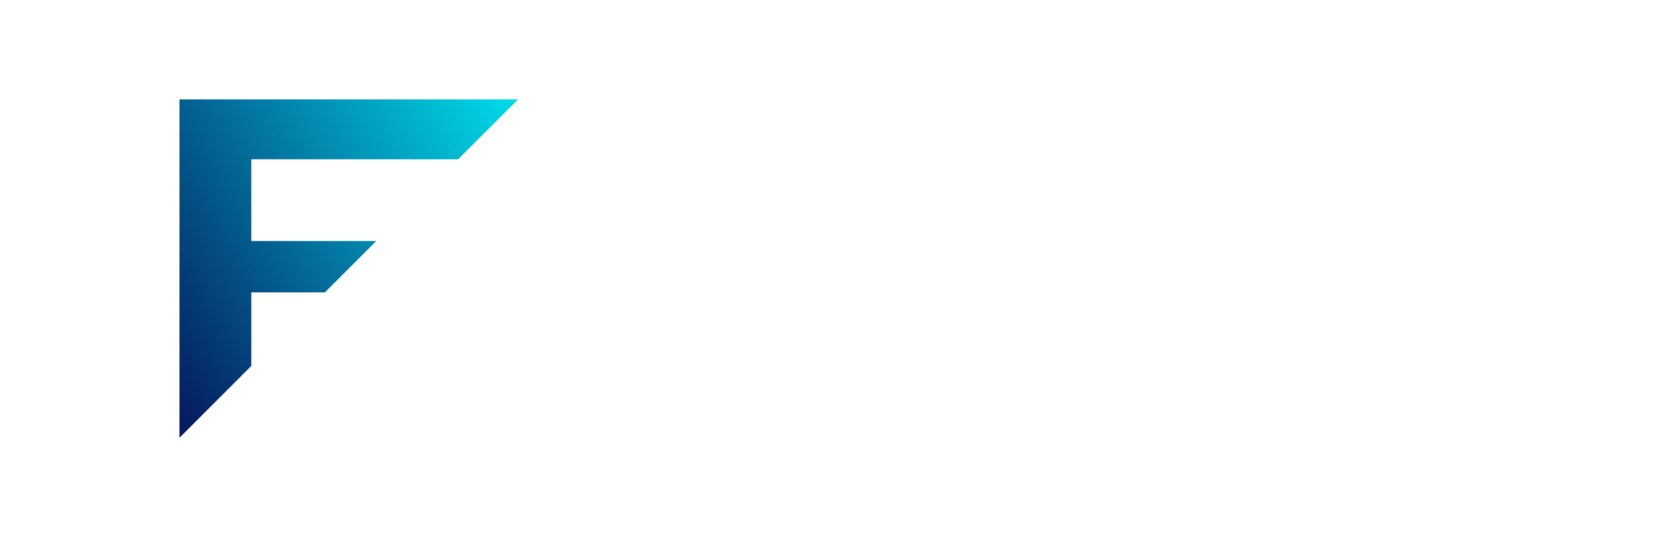 F-SECURITY